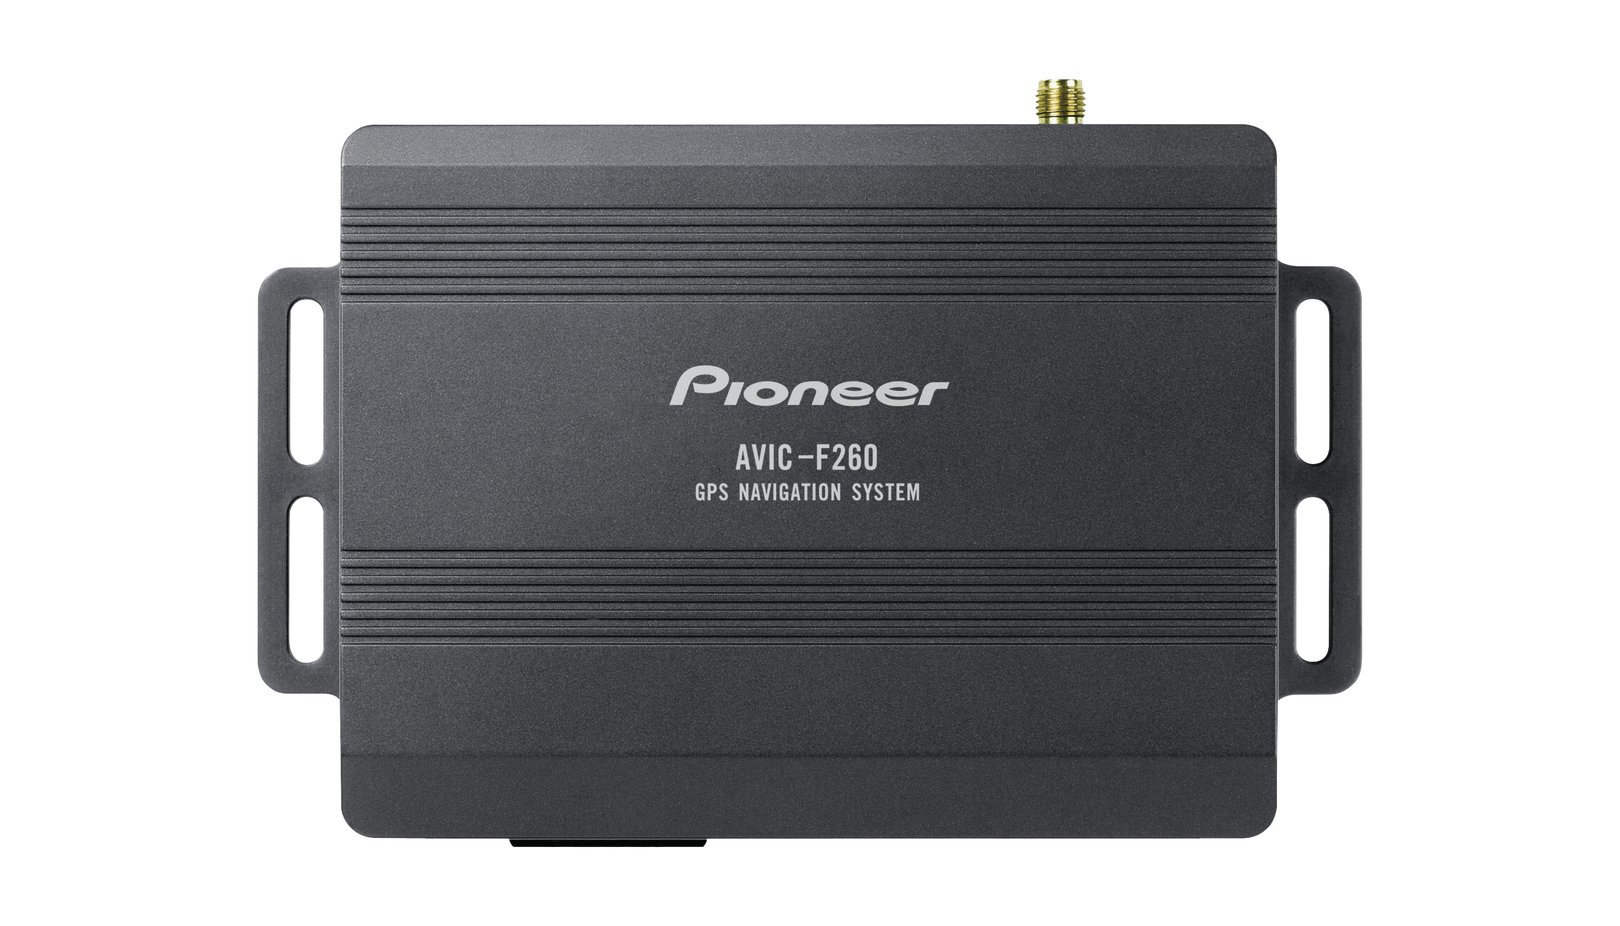 Pioneer AVIC-F260-2 Navigationssystem für AVH System, integrierter TMC Receiver, Navigationsdaten über SD Karte, Karten für 46 Länder in 18 Sprachen